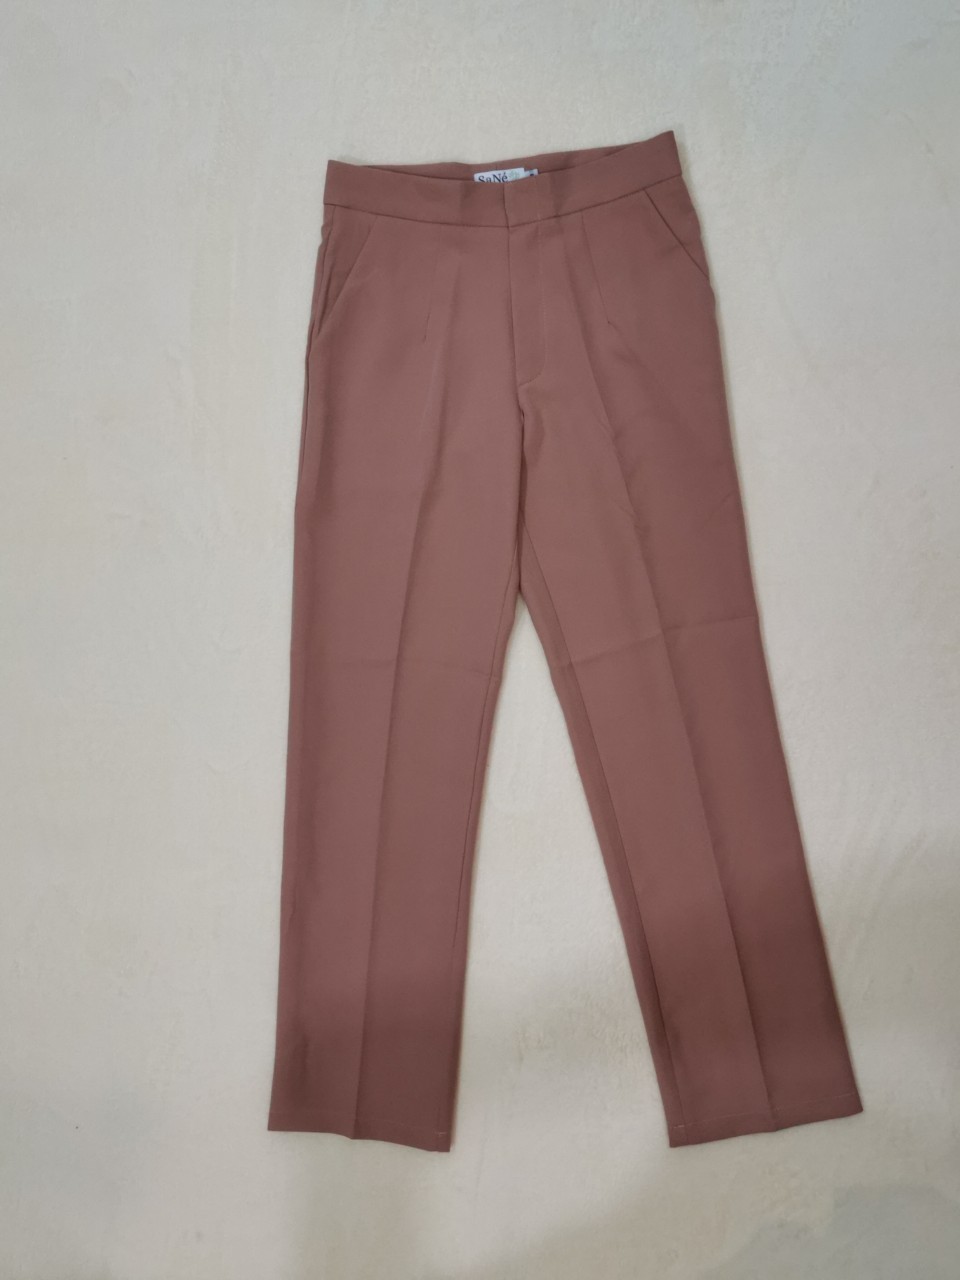 ✨✨✨ 9 สี กางเกงขายาว กางเกงทรงกระบอก ​(กลาง)​ ผ้าเปเป้​ กางเกงทำงาน​ มีของพร้อมส่ง ✨✨✨ by SaNe Shop